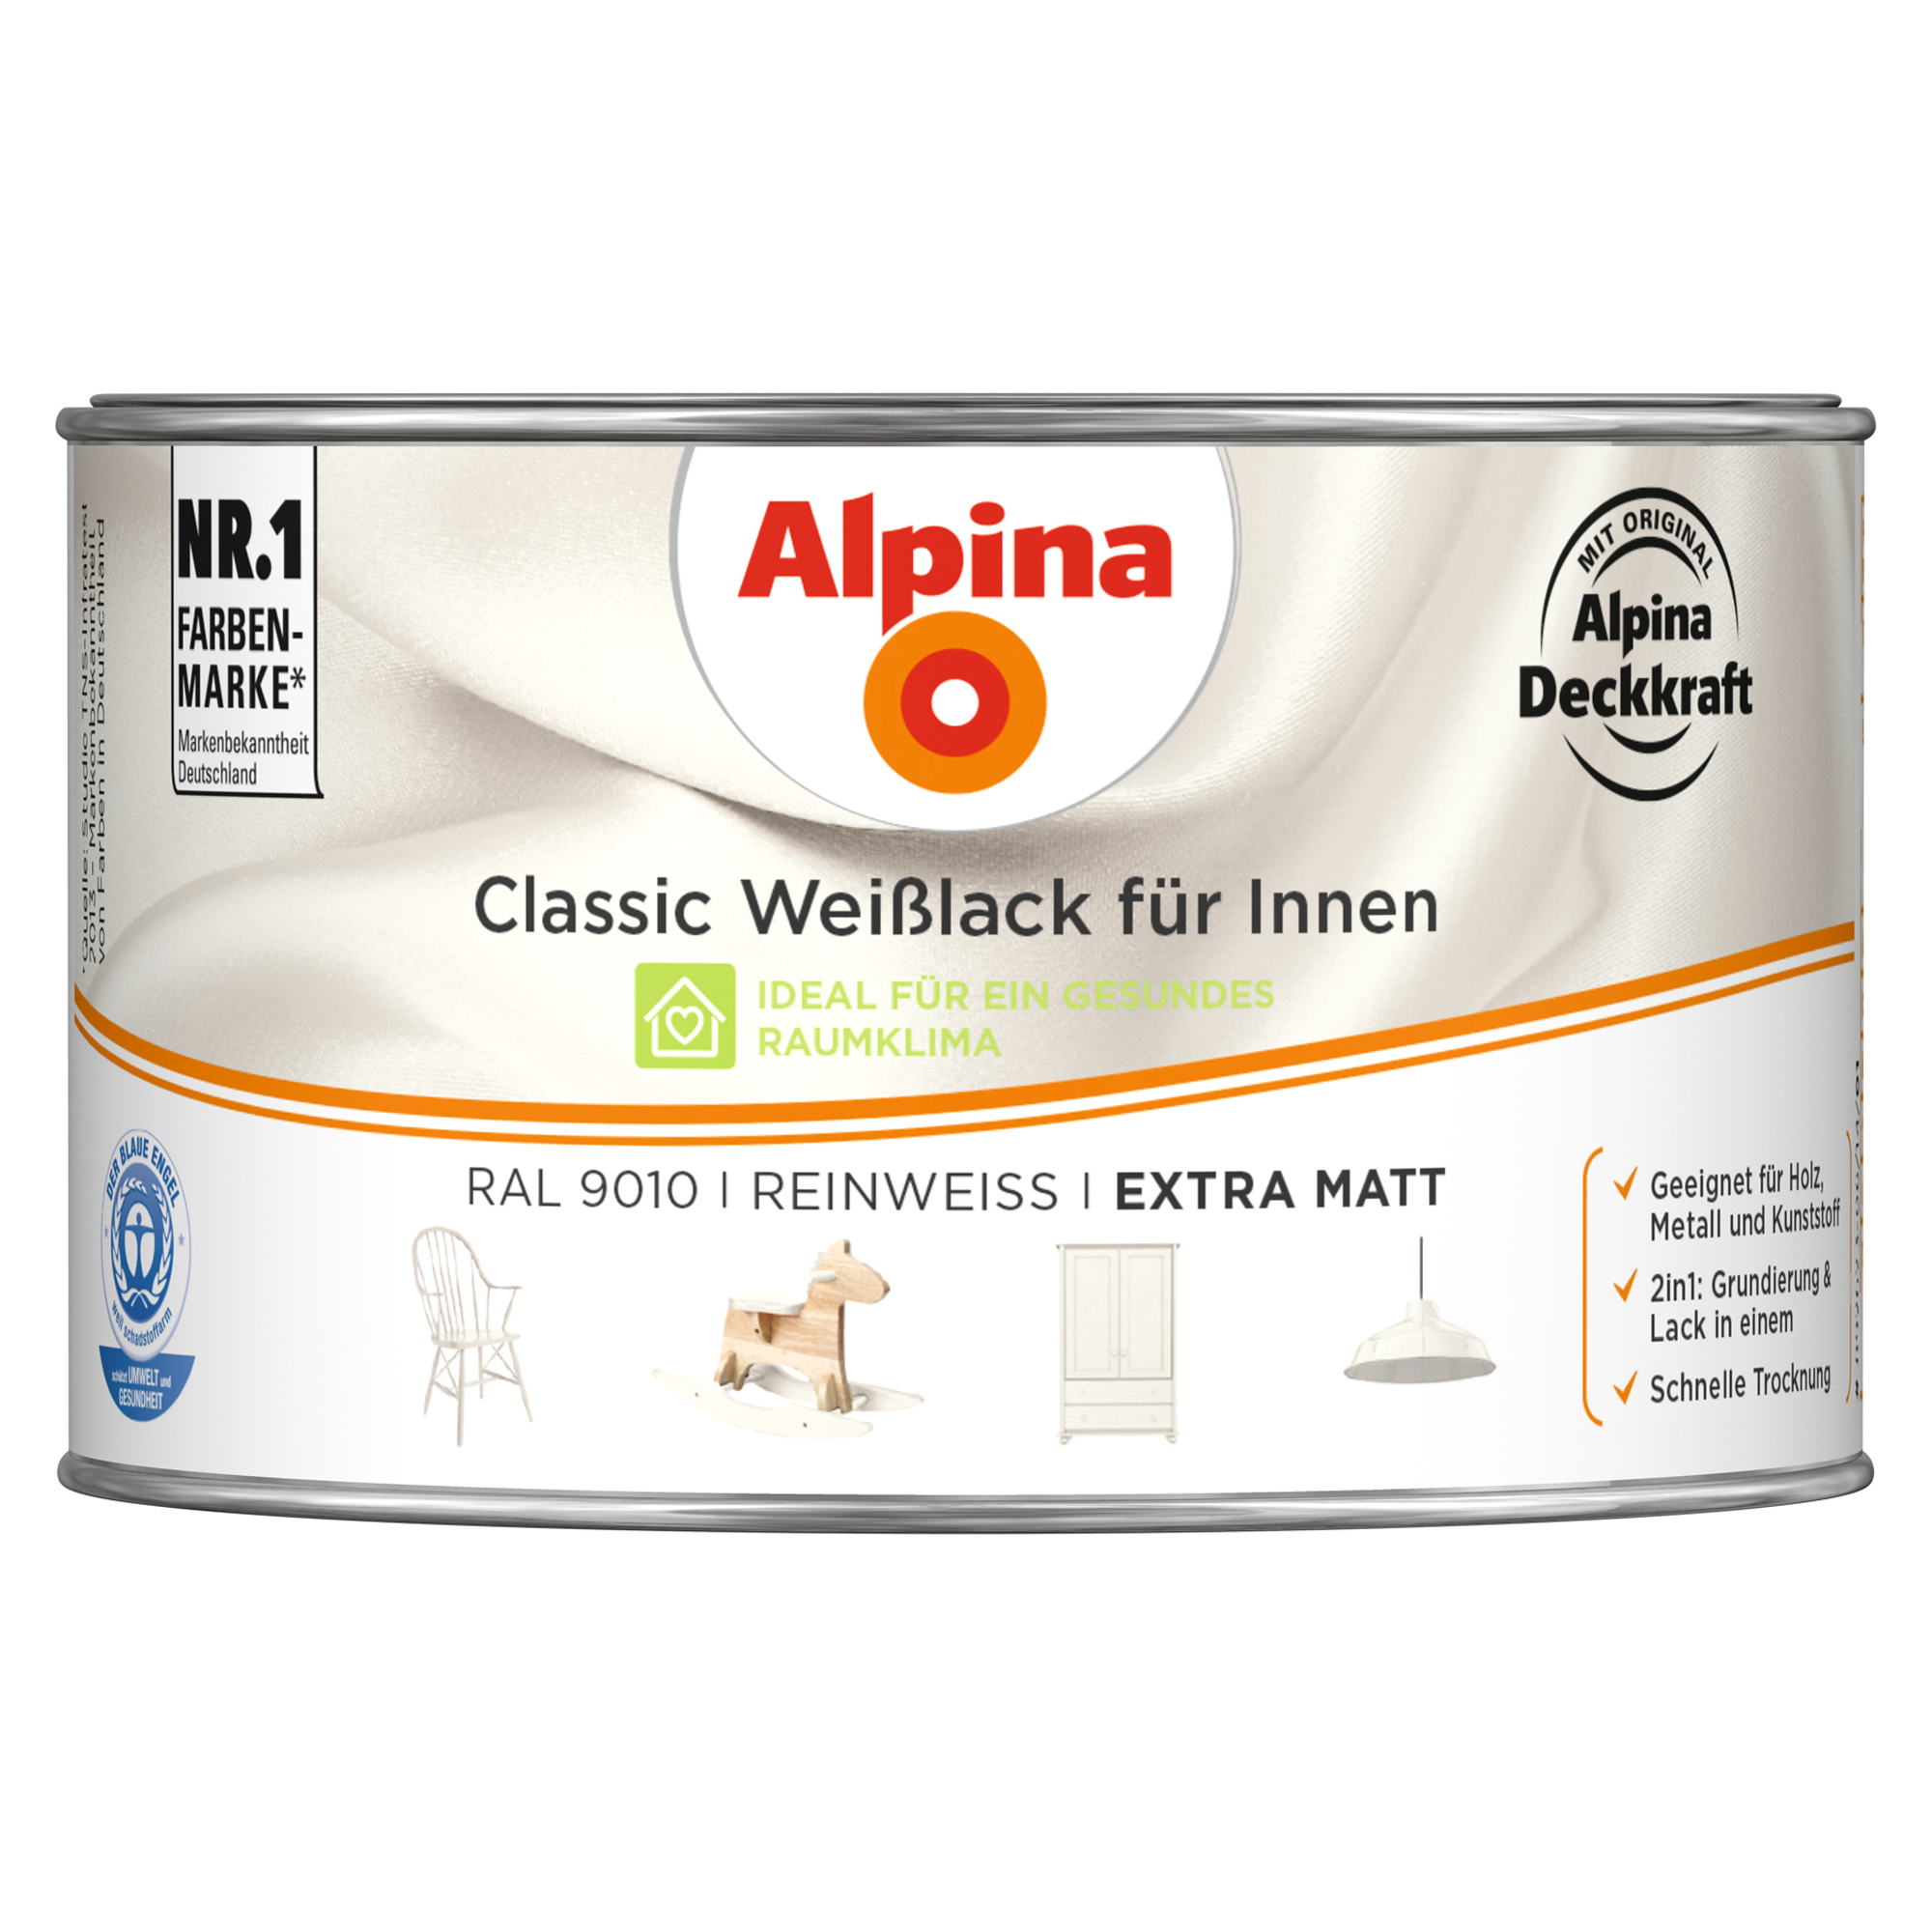 Weißlack für Innen reinweiß extramatt 300 ml + product picture